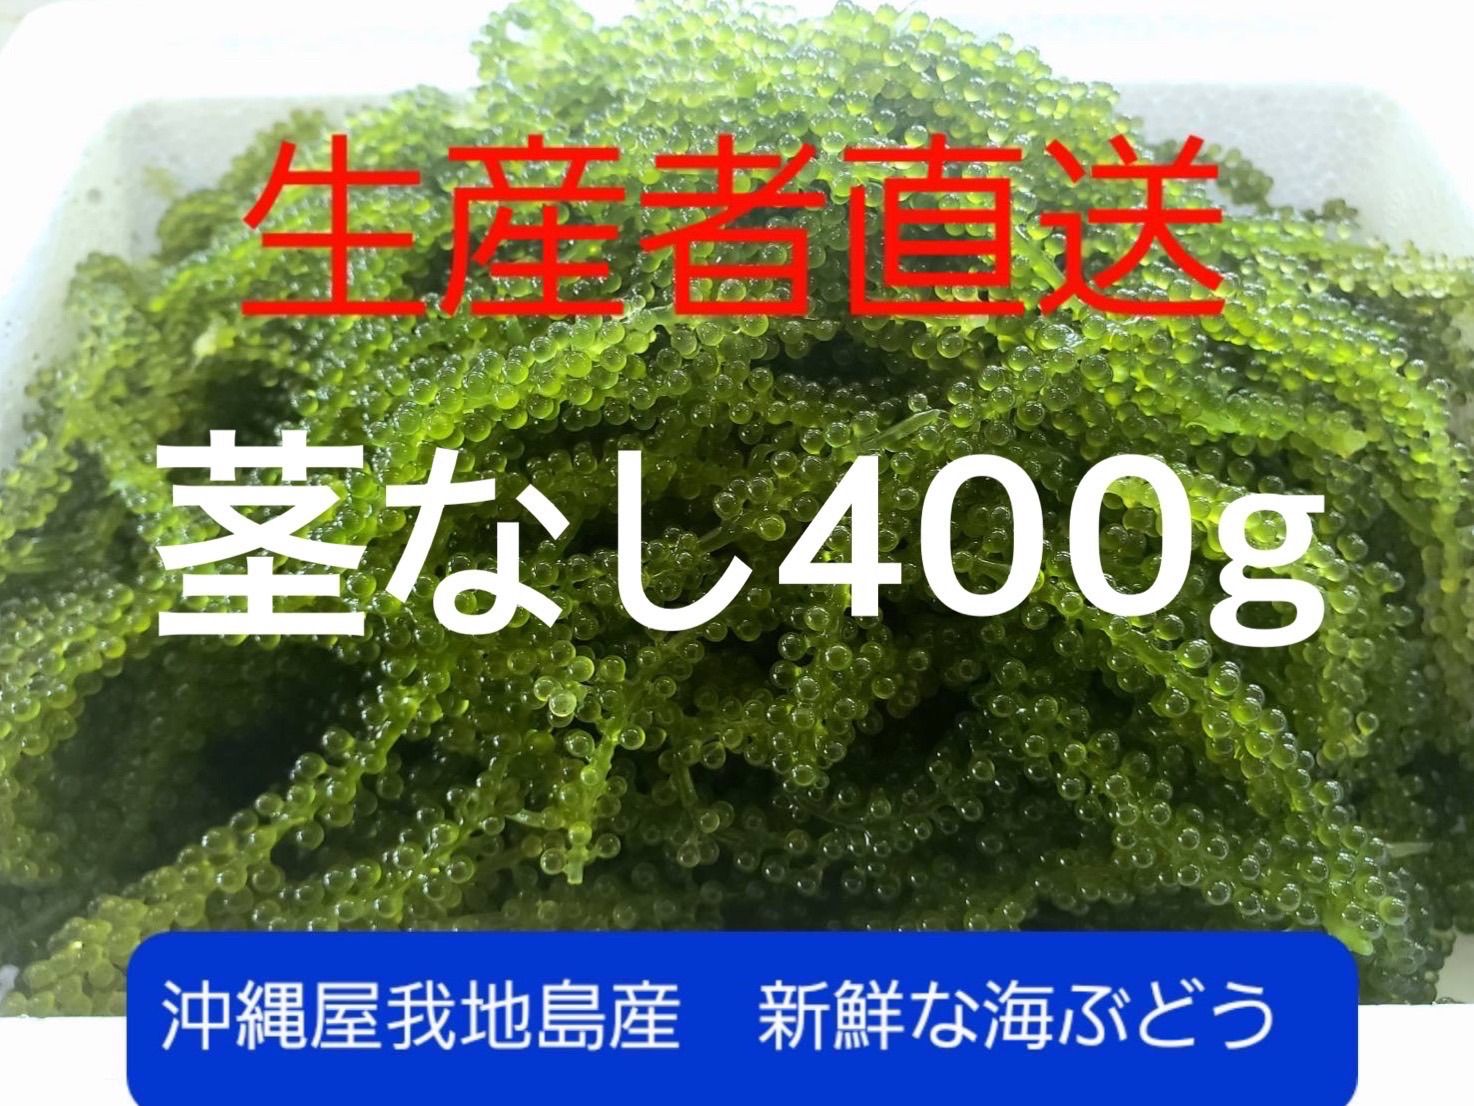 沖縄県産 海ぶどう茎付き1000ｇ“ 商品の説明⚠️必読⚠️ ”